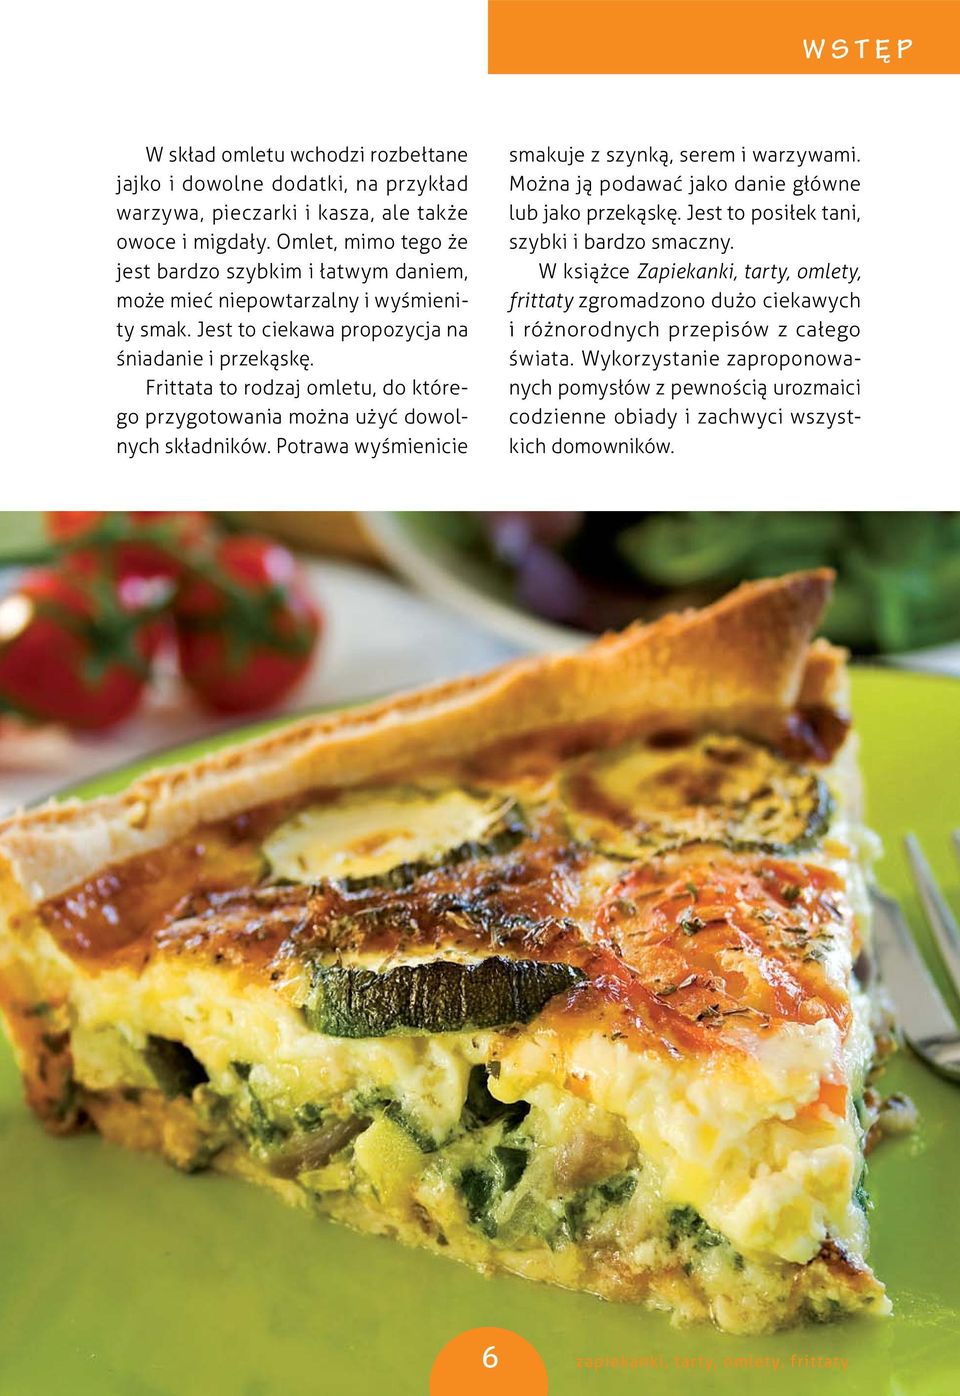 Frittata to rodzaj omletu, do którego przygotowania można użyć dowolnych składników. Potrawa wyśmienicie smakuje z szynką, serem i warzywami.